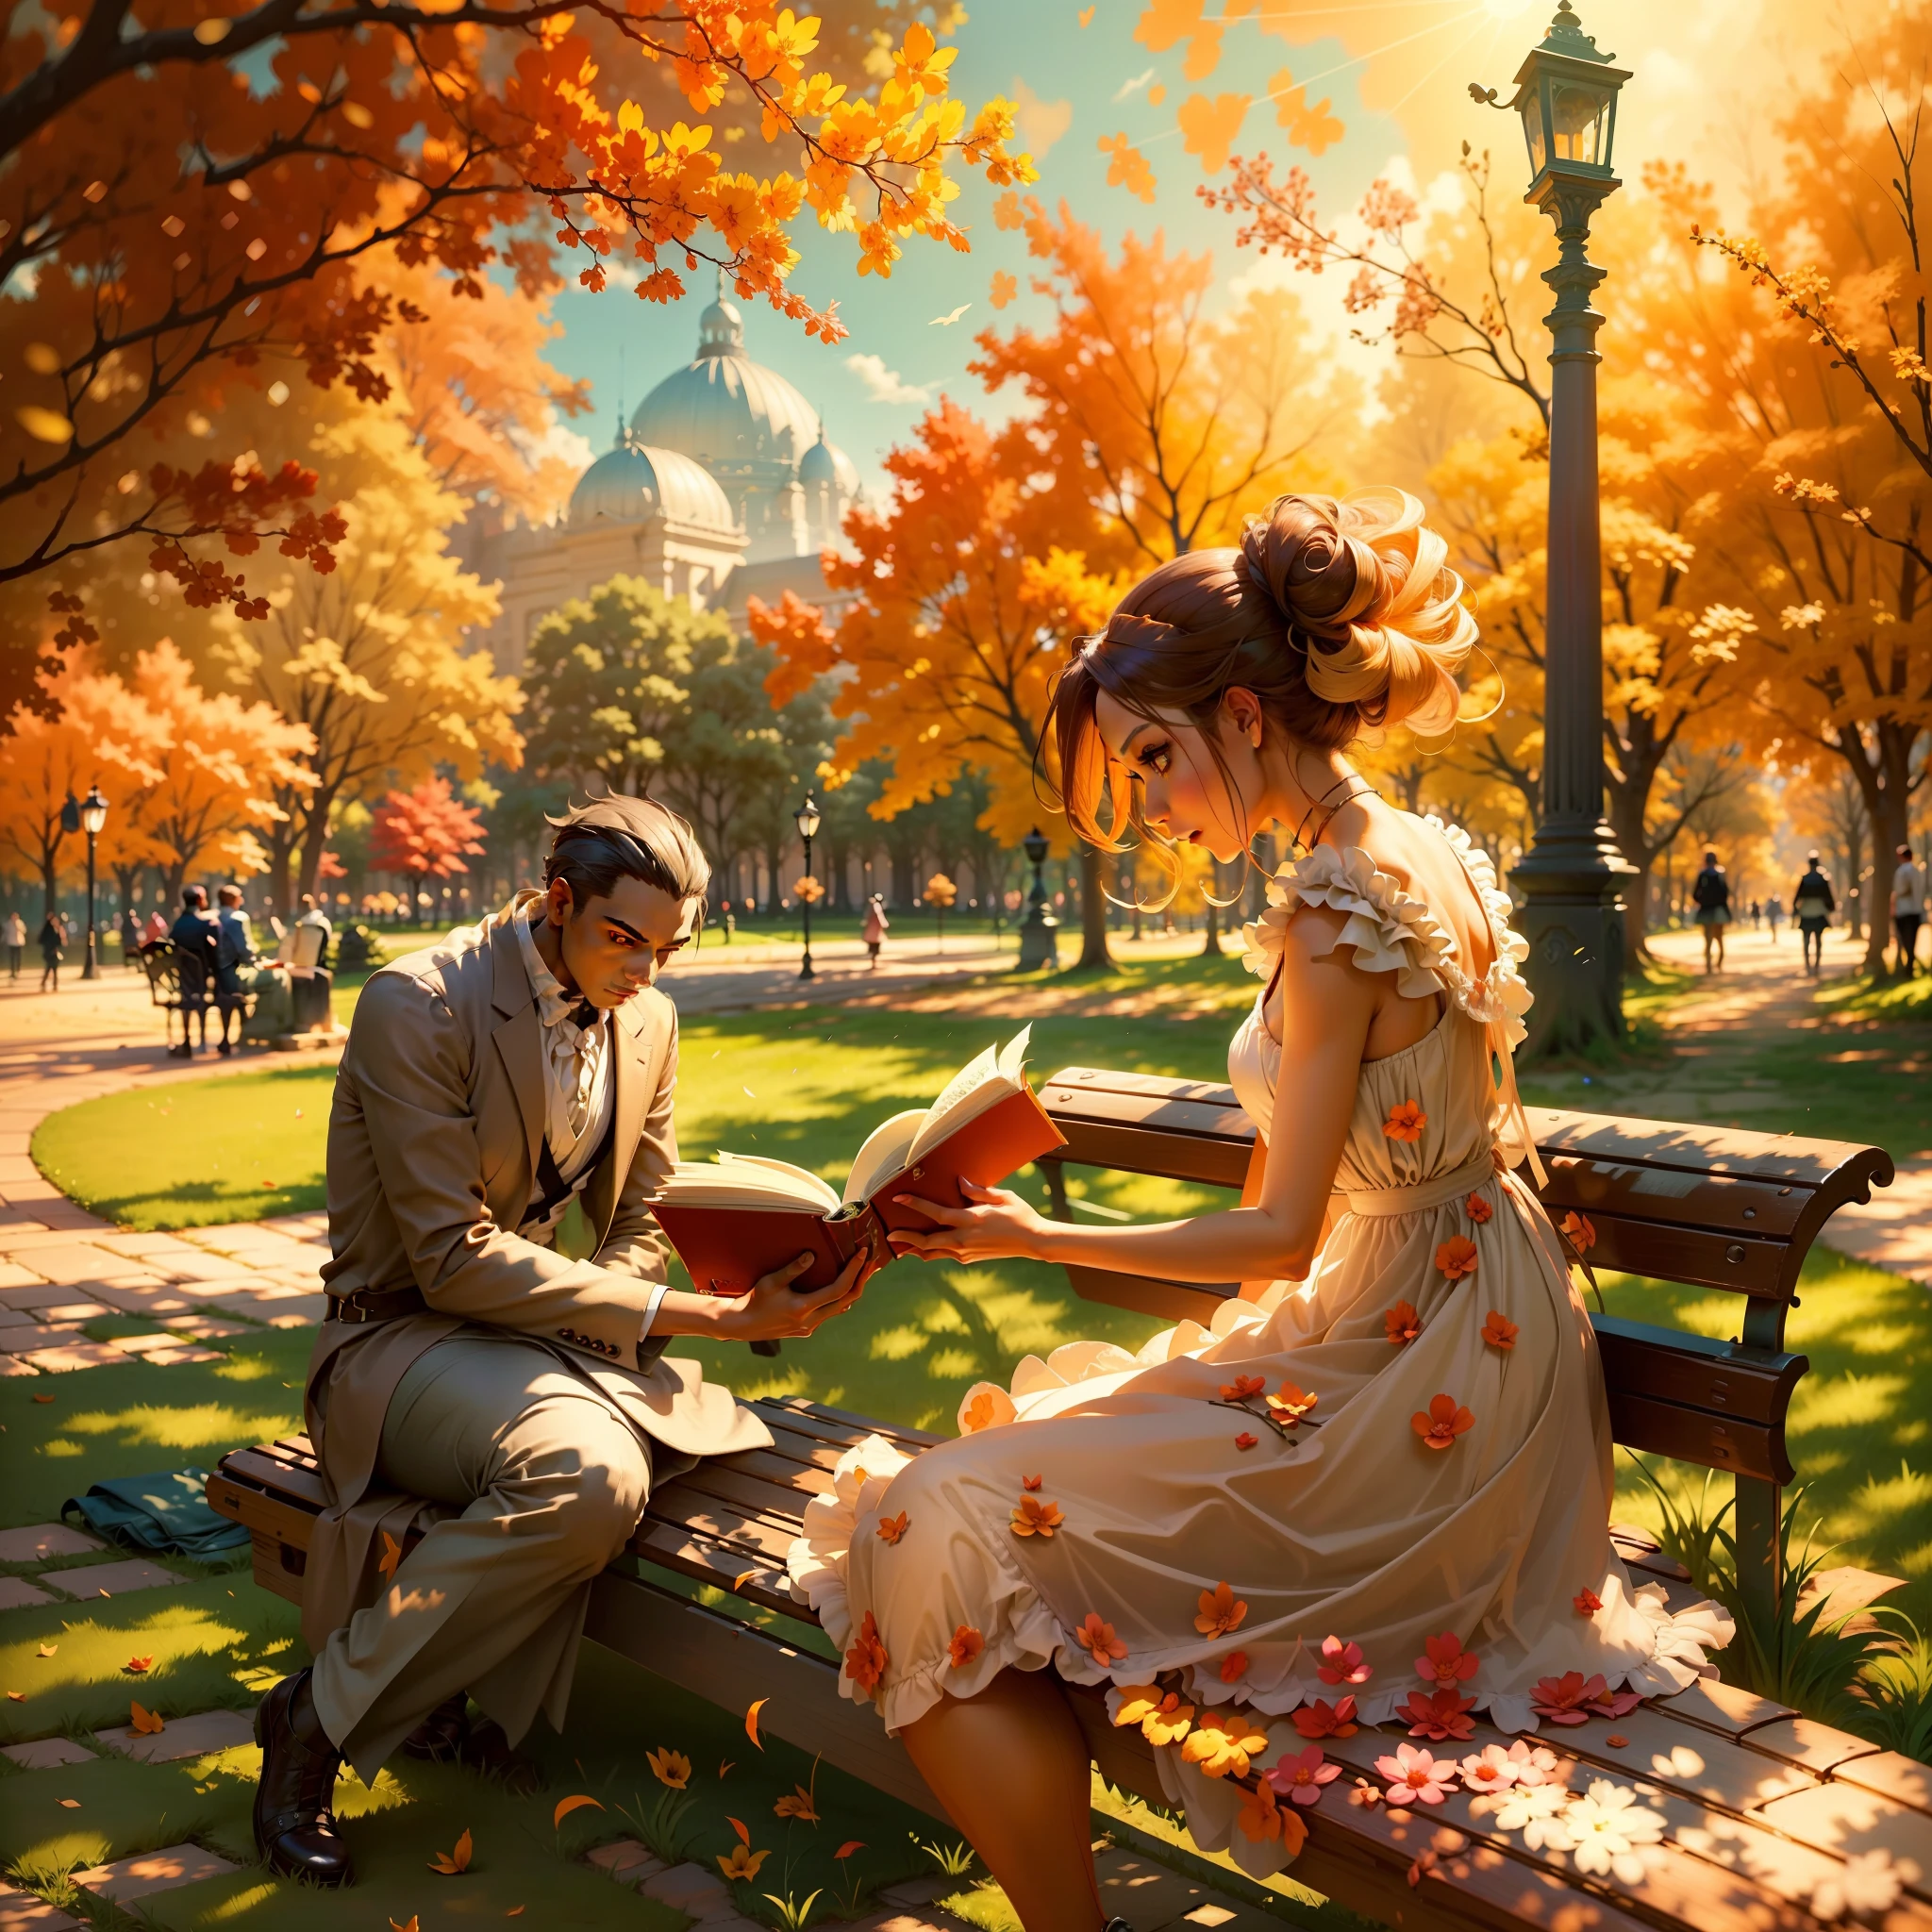 Представьте себе сцену, где женщина идет по парку солнечным днем.. Она носит элегантное платье, которое подчеркивает ее красоту., и ее любопытные глаза остановились на МУЖЧИНЕ, сидящем на скамейке, полностью погружен в книгу. Опишите яркую атмосферу, создаваемую солнечными лучами на заднем плане..